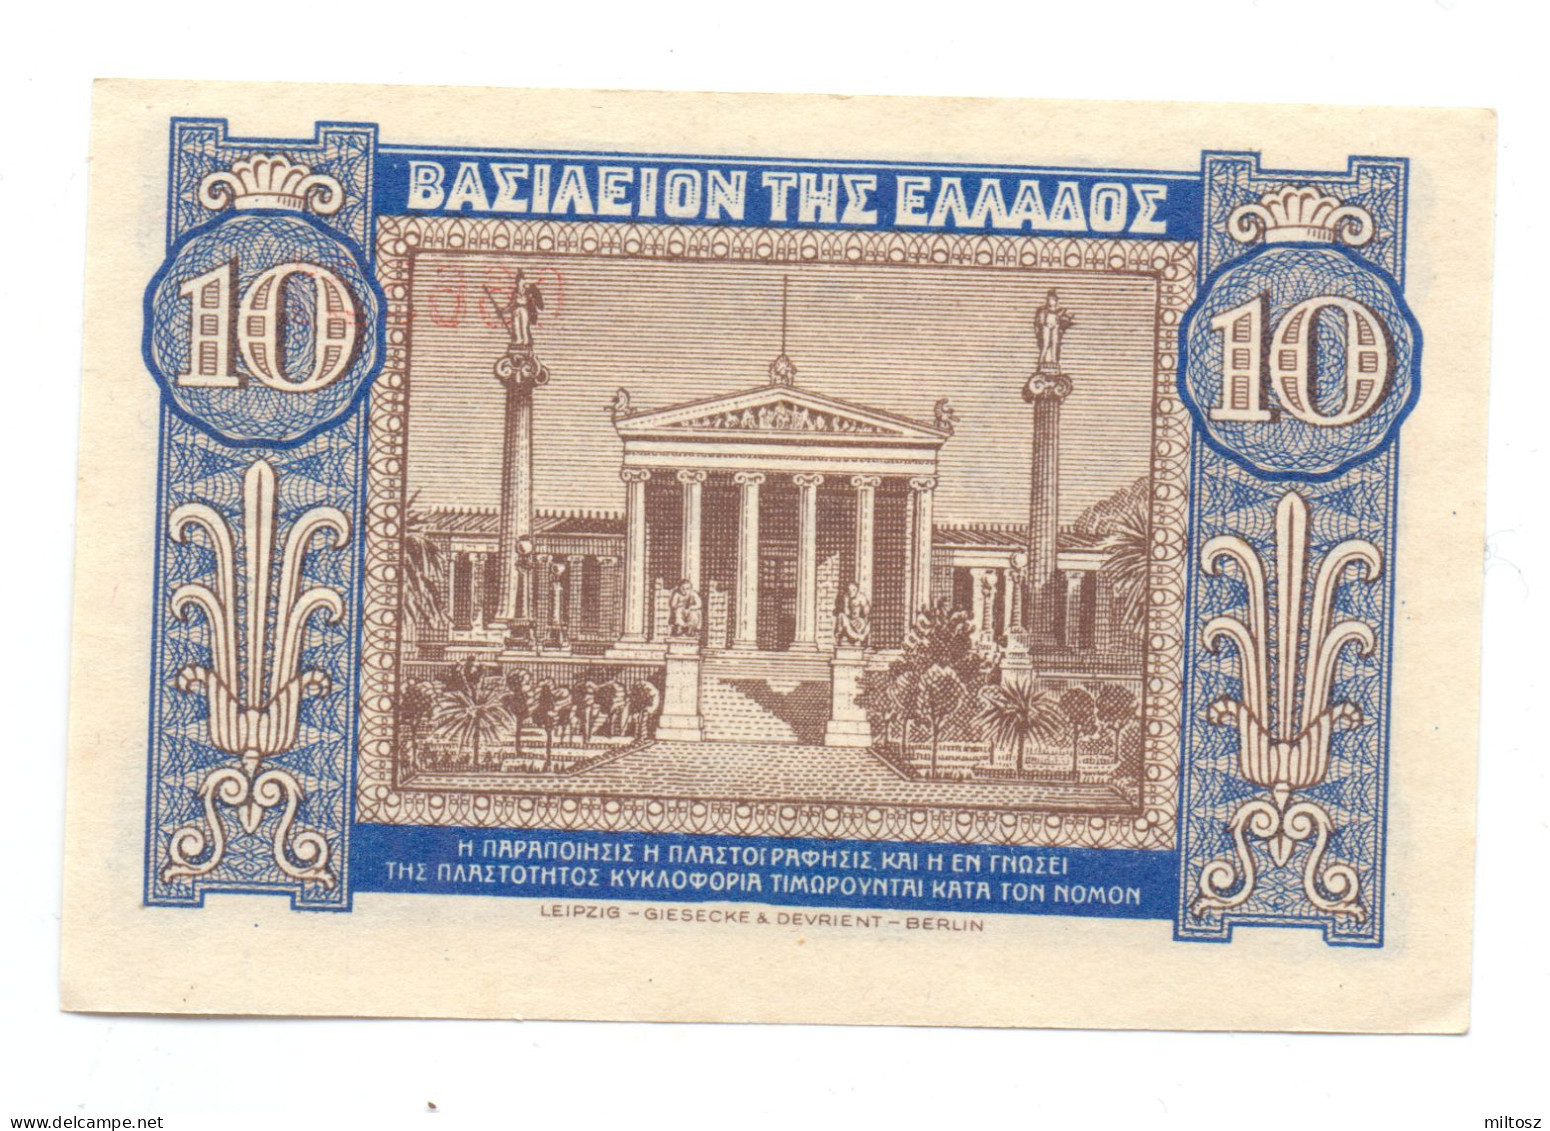 Greece 10 Drachmas 1940 - Griechenland